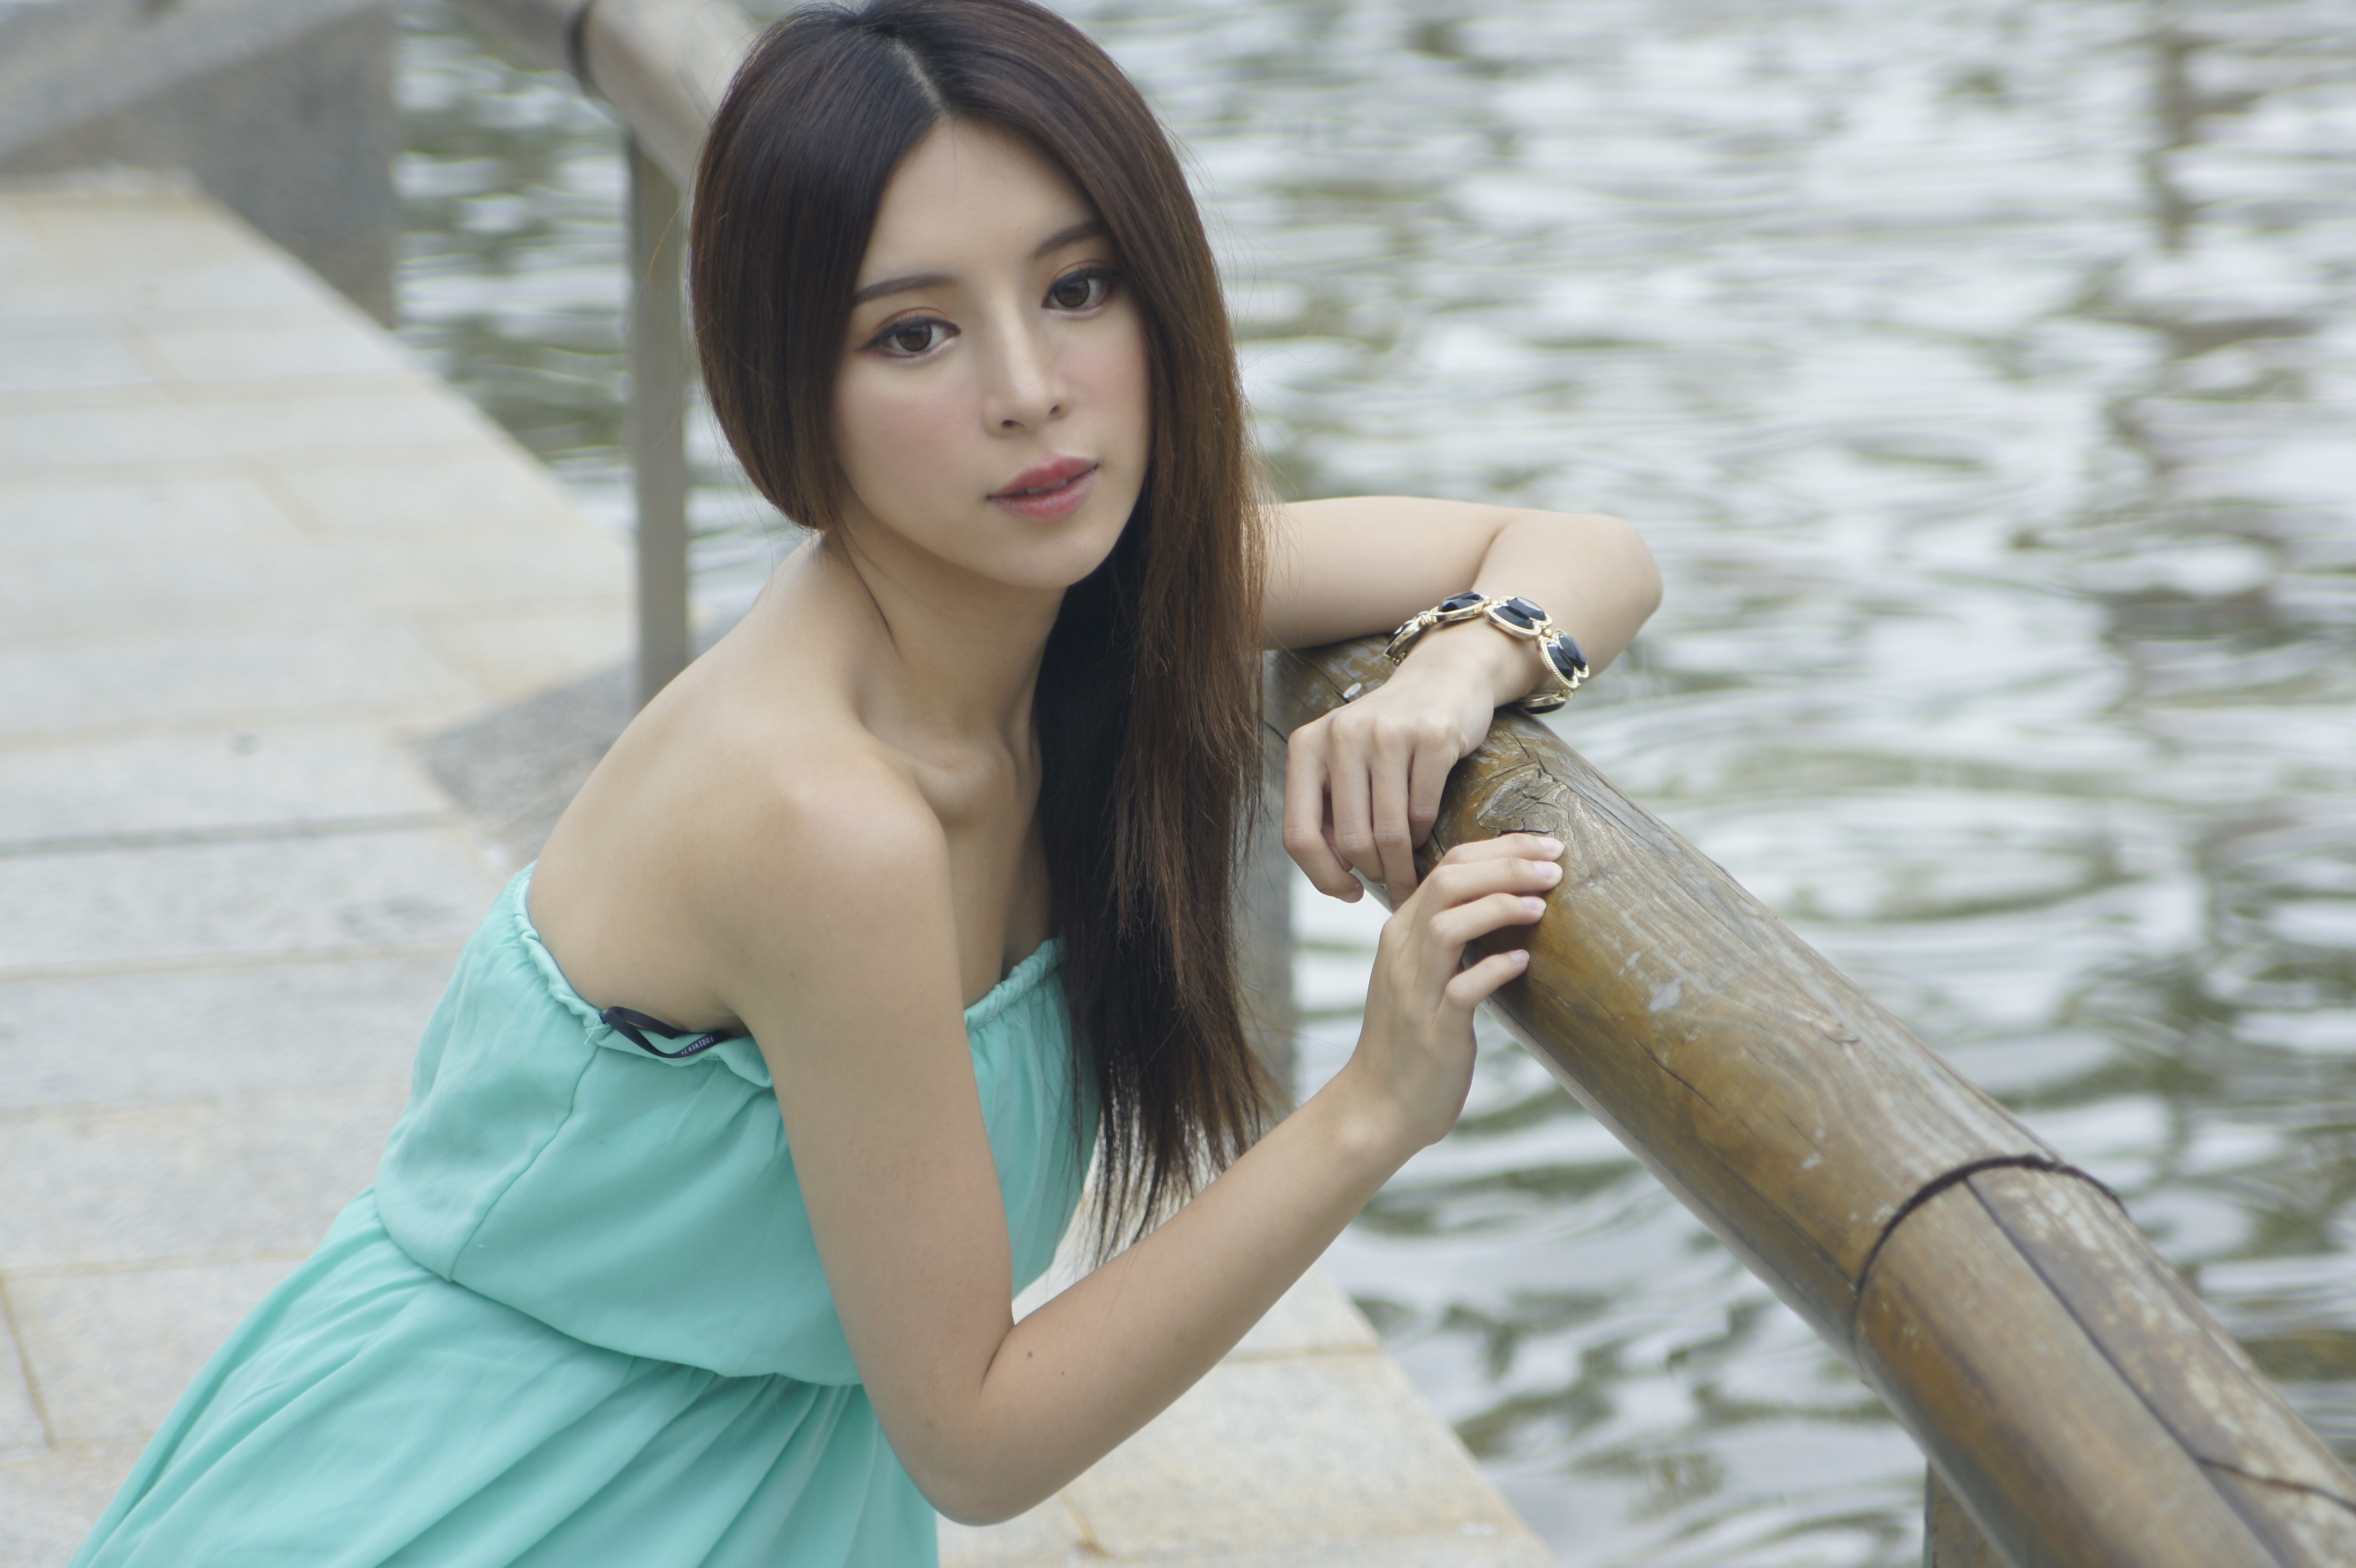 Asian Bokeh Bracelet Dress Face Girl Hair Julie Chang Model Portrait Taiwanese Water Zhang Qi Jun 4592x3056